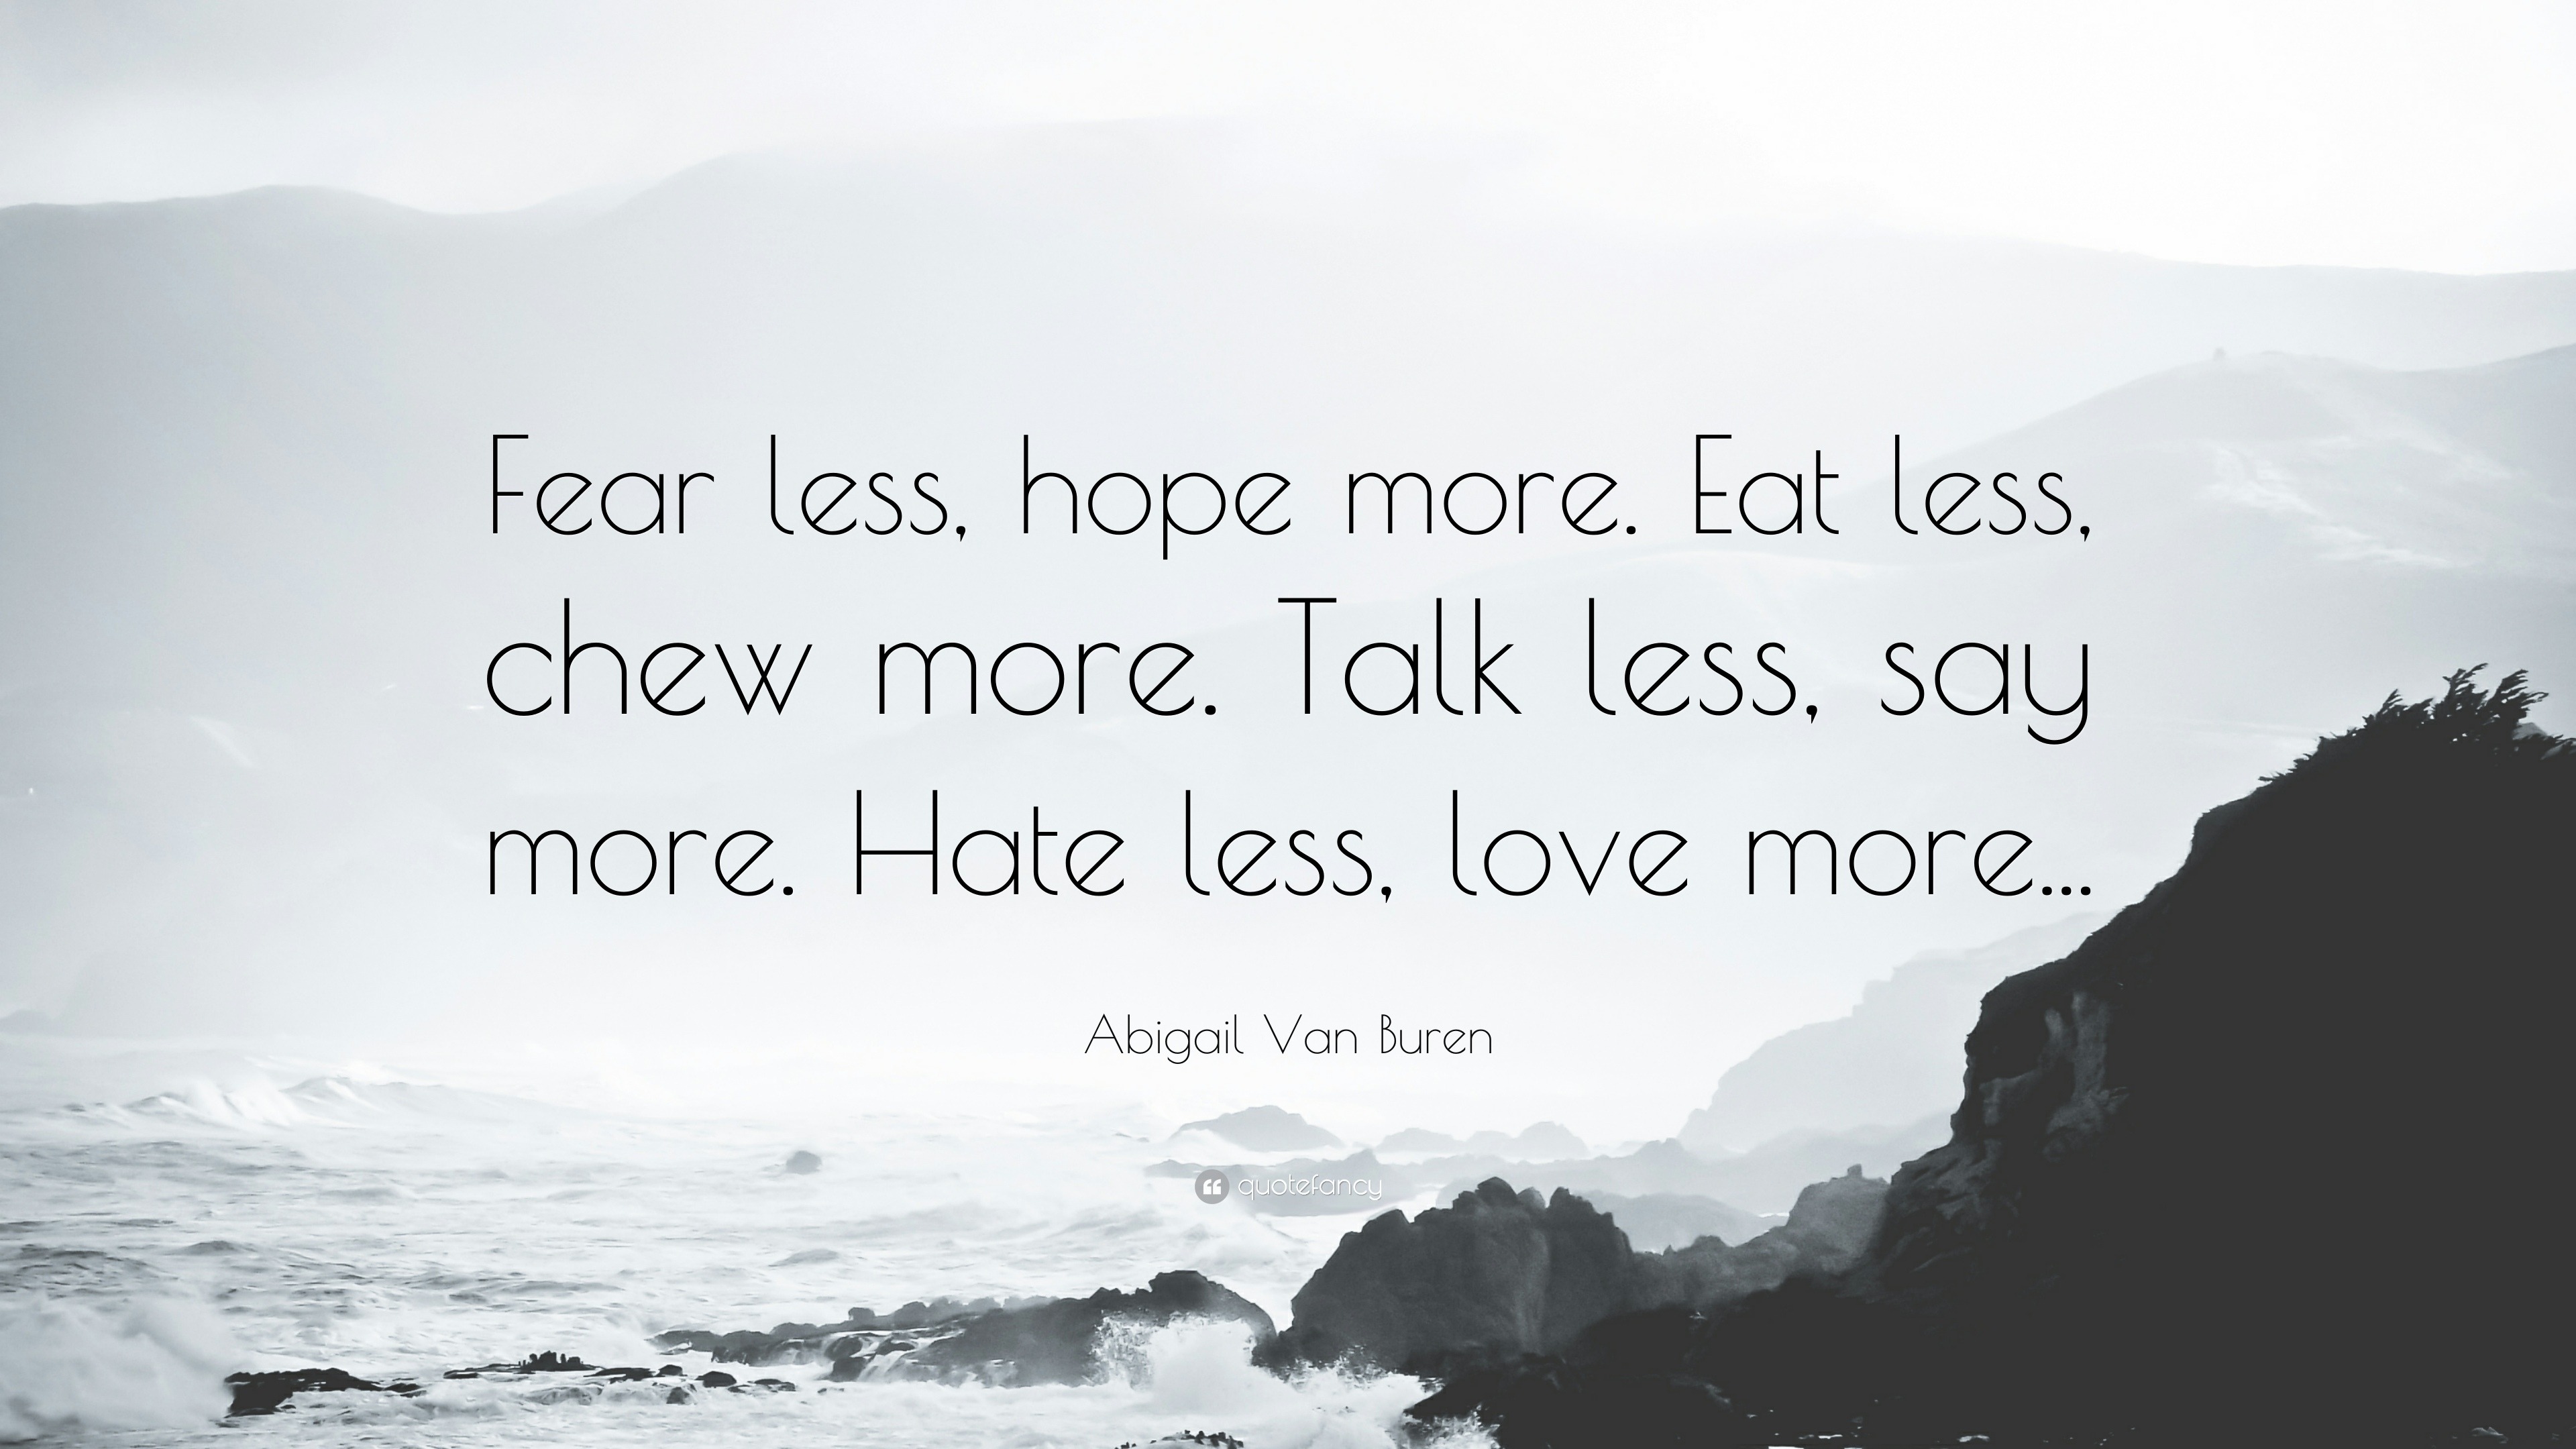 Abigail Van Buren Quote “Fear less hope more Eat less chew